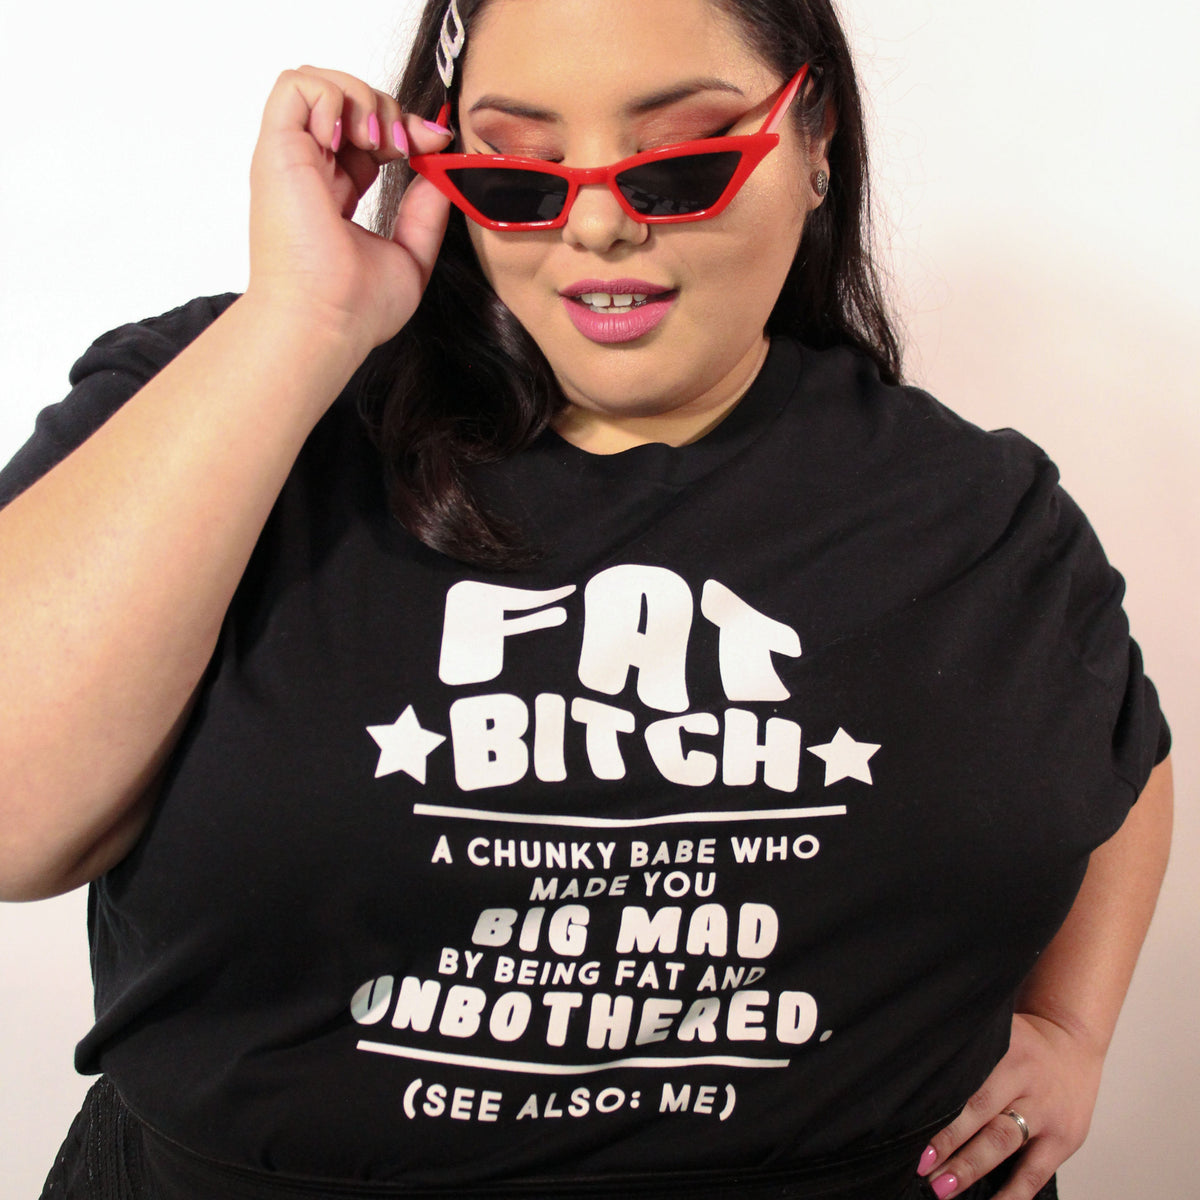 Fat Bitch T-Shirt - Fat Mermaids 